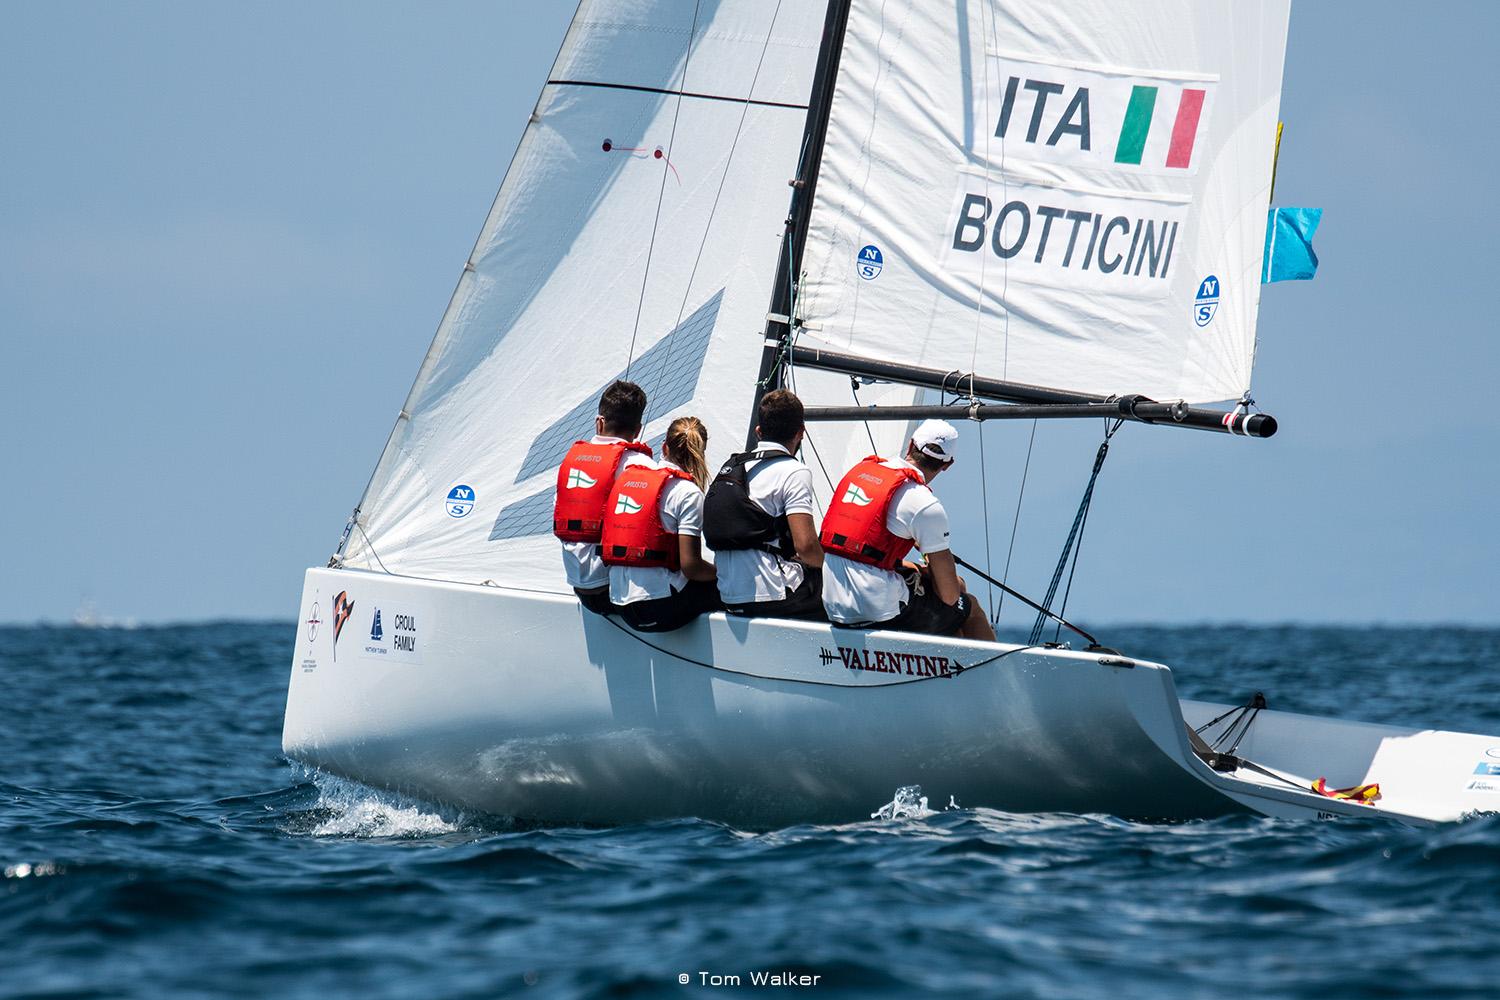 Parola a Ettore Botticini, leader del CNVA Sailing Team